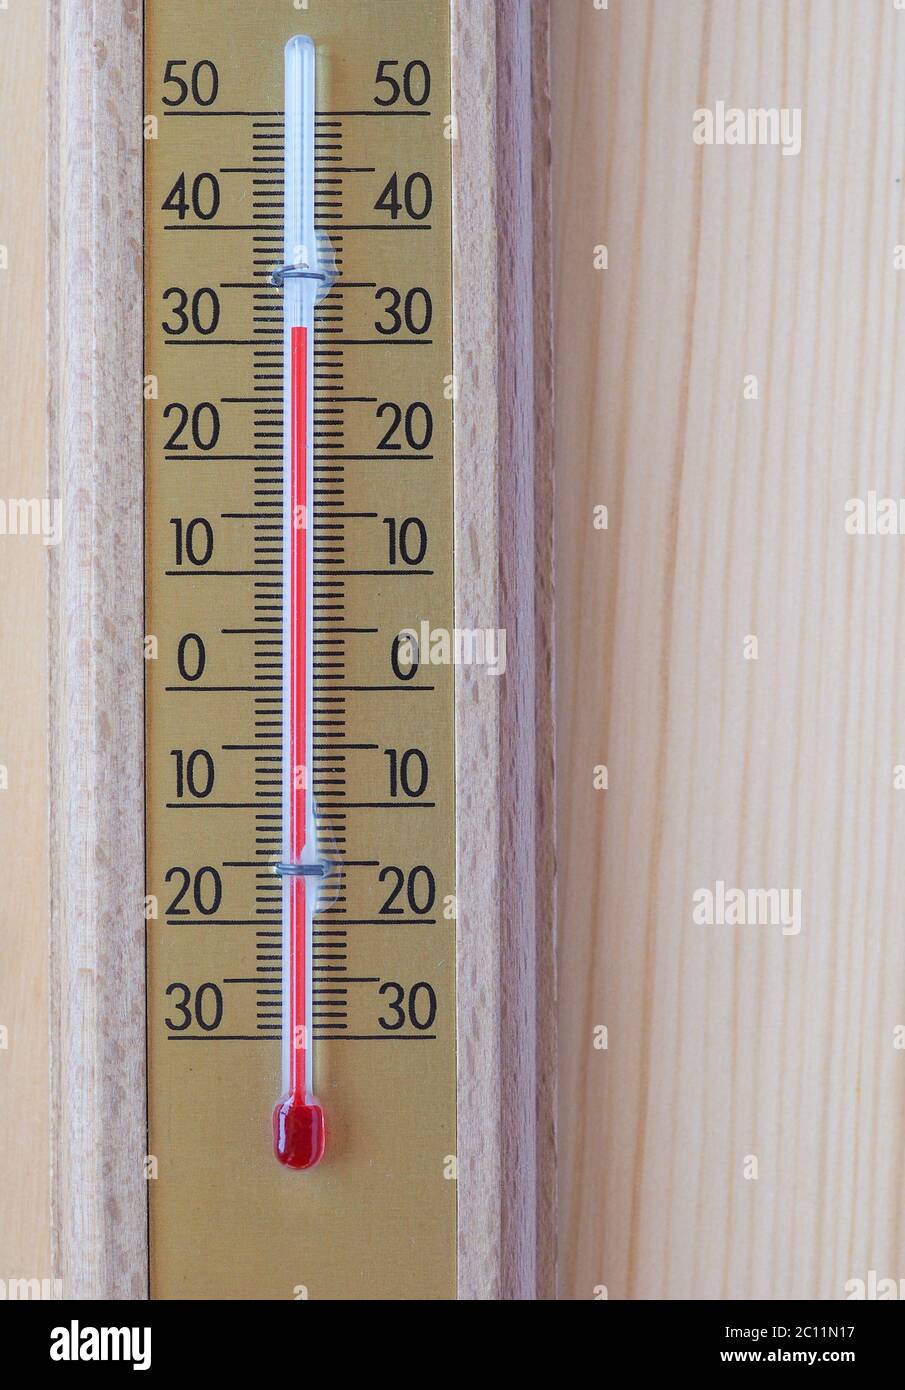 https://c8.alamy.com/comp/2C11N17/thermometer-for-air-temperature-measurement-2C11N17.jpg